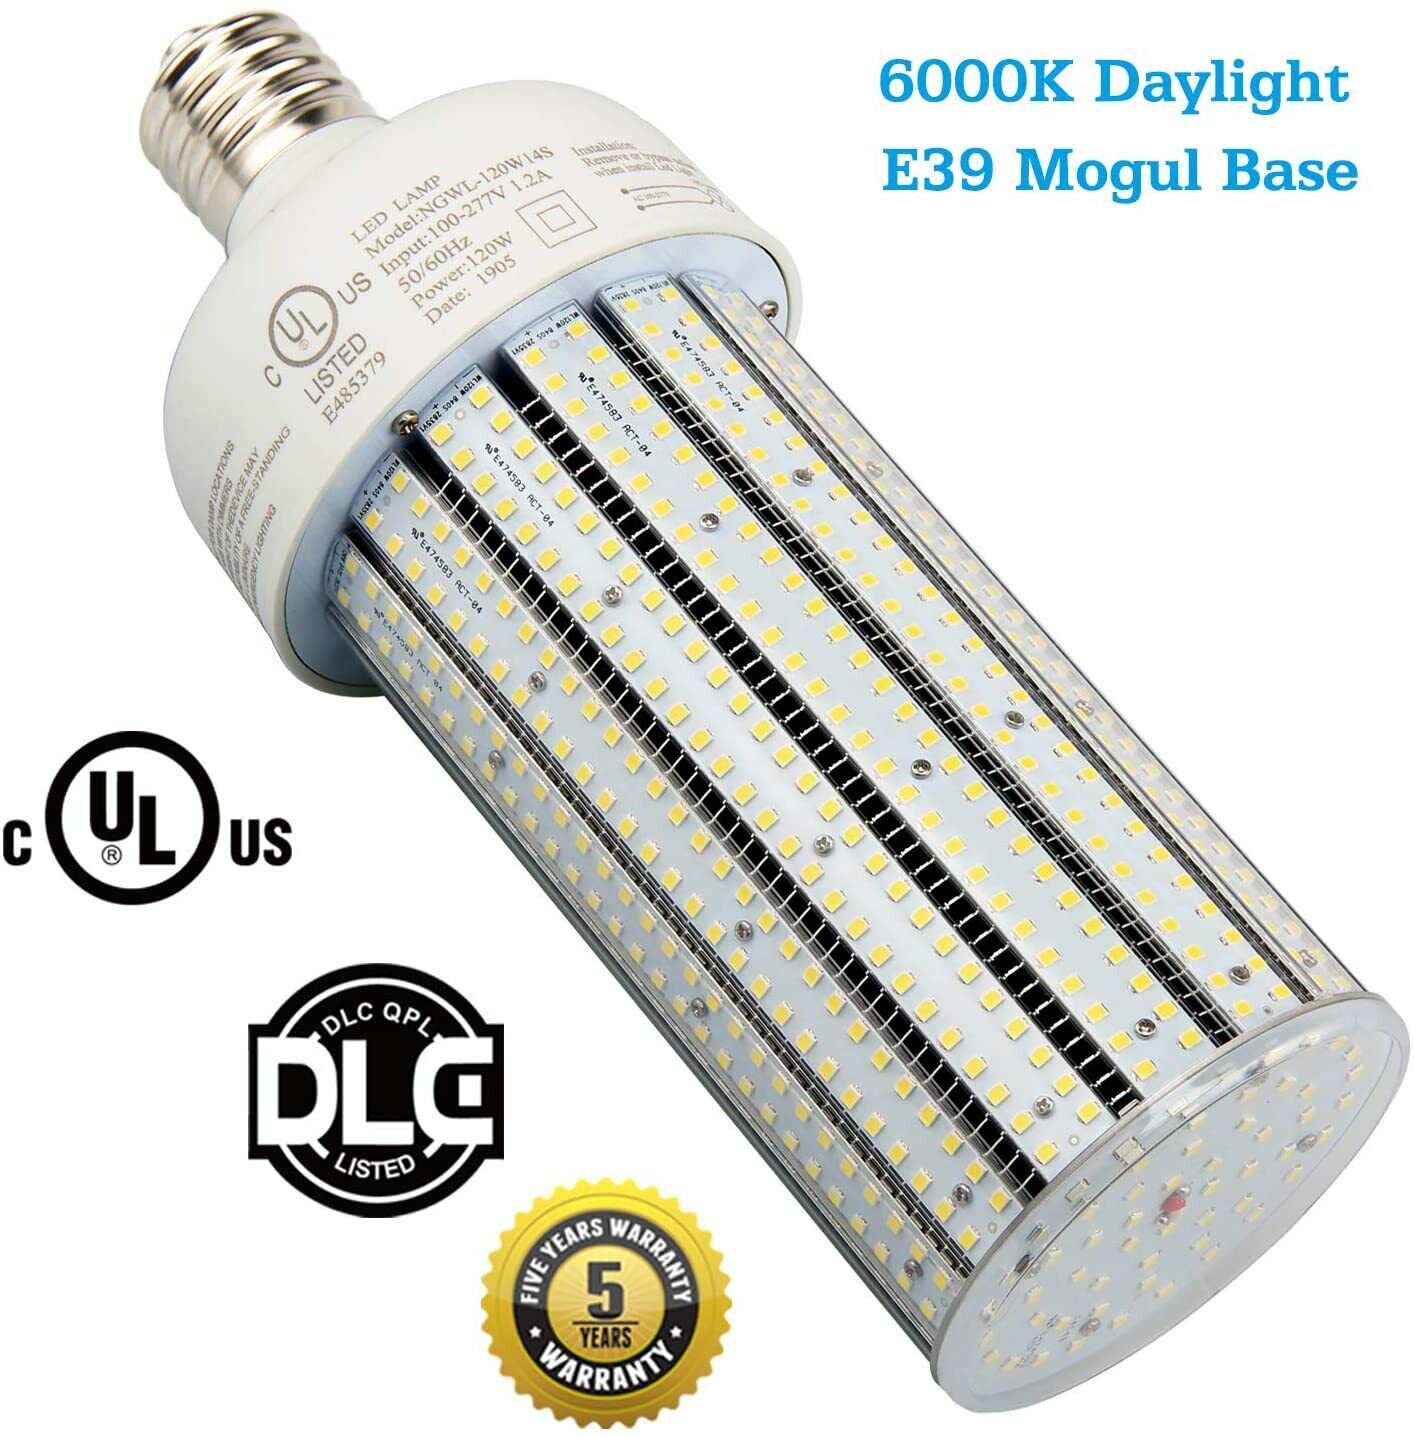 UL cUL 120Watt LED Corn Cob Bulb Light E39 Retrofit 400W HID Street Lights 6000K